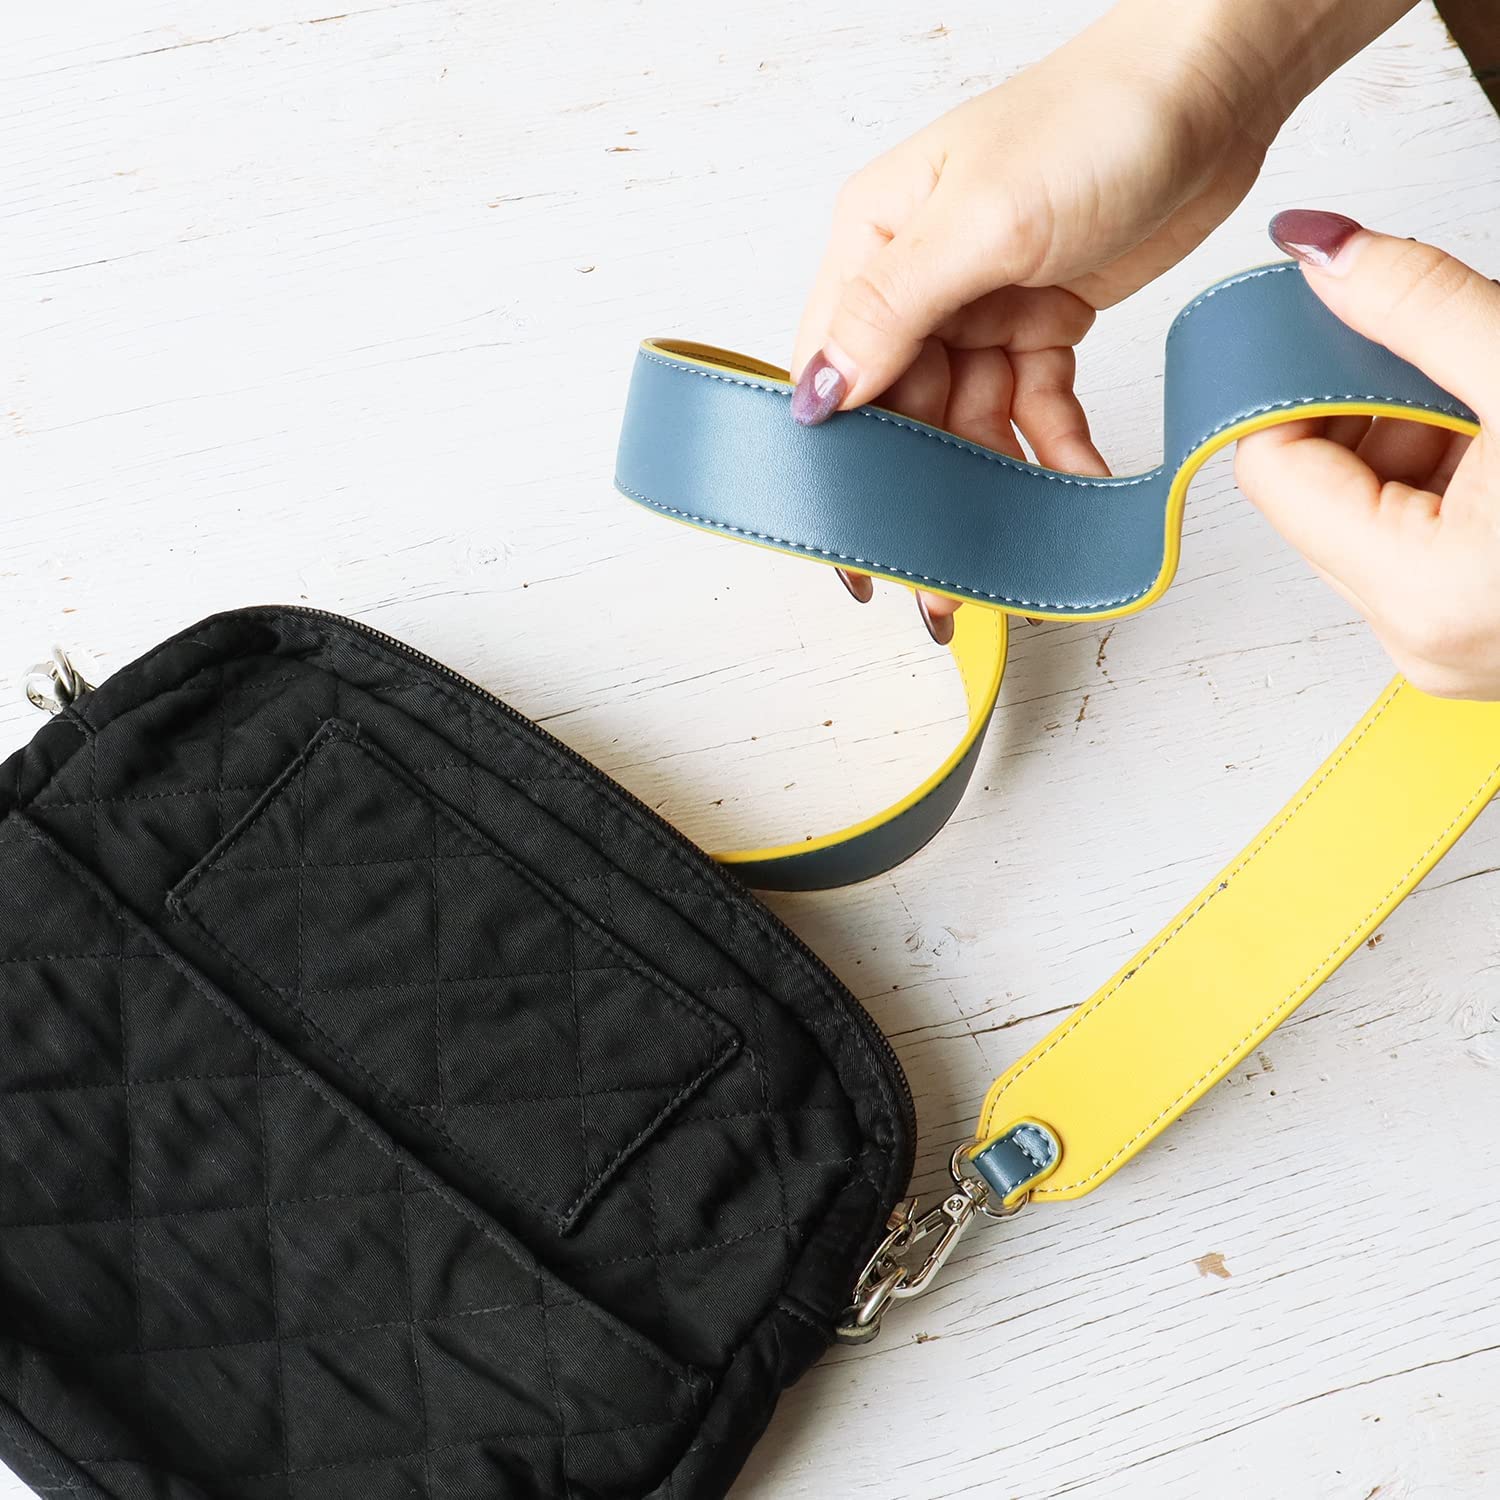 單邊雙面色袋帶 :    (長約105cm )  帶闊 35mm -  藏藍色 / 黃色